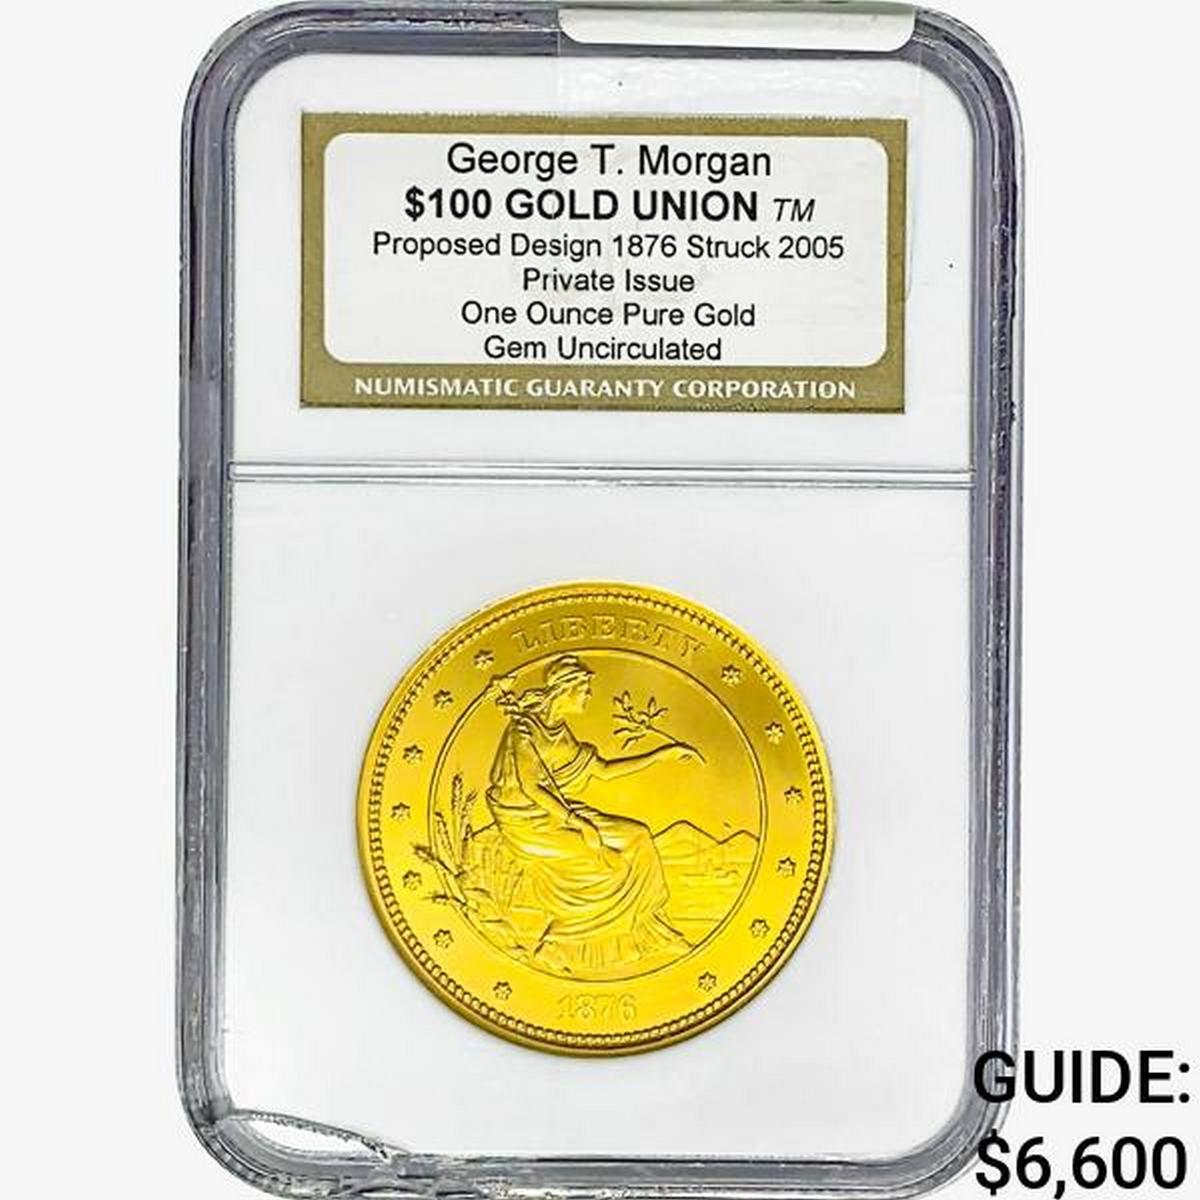 2005 1oz. Gold $100 Union G.T. Morgan NGC GemUNC P